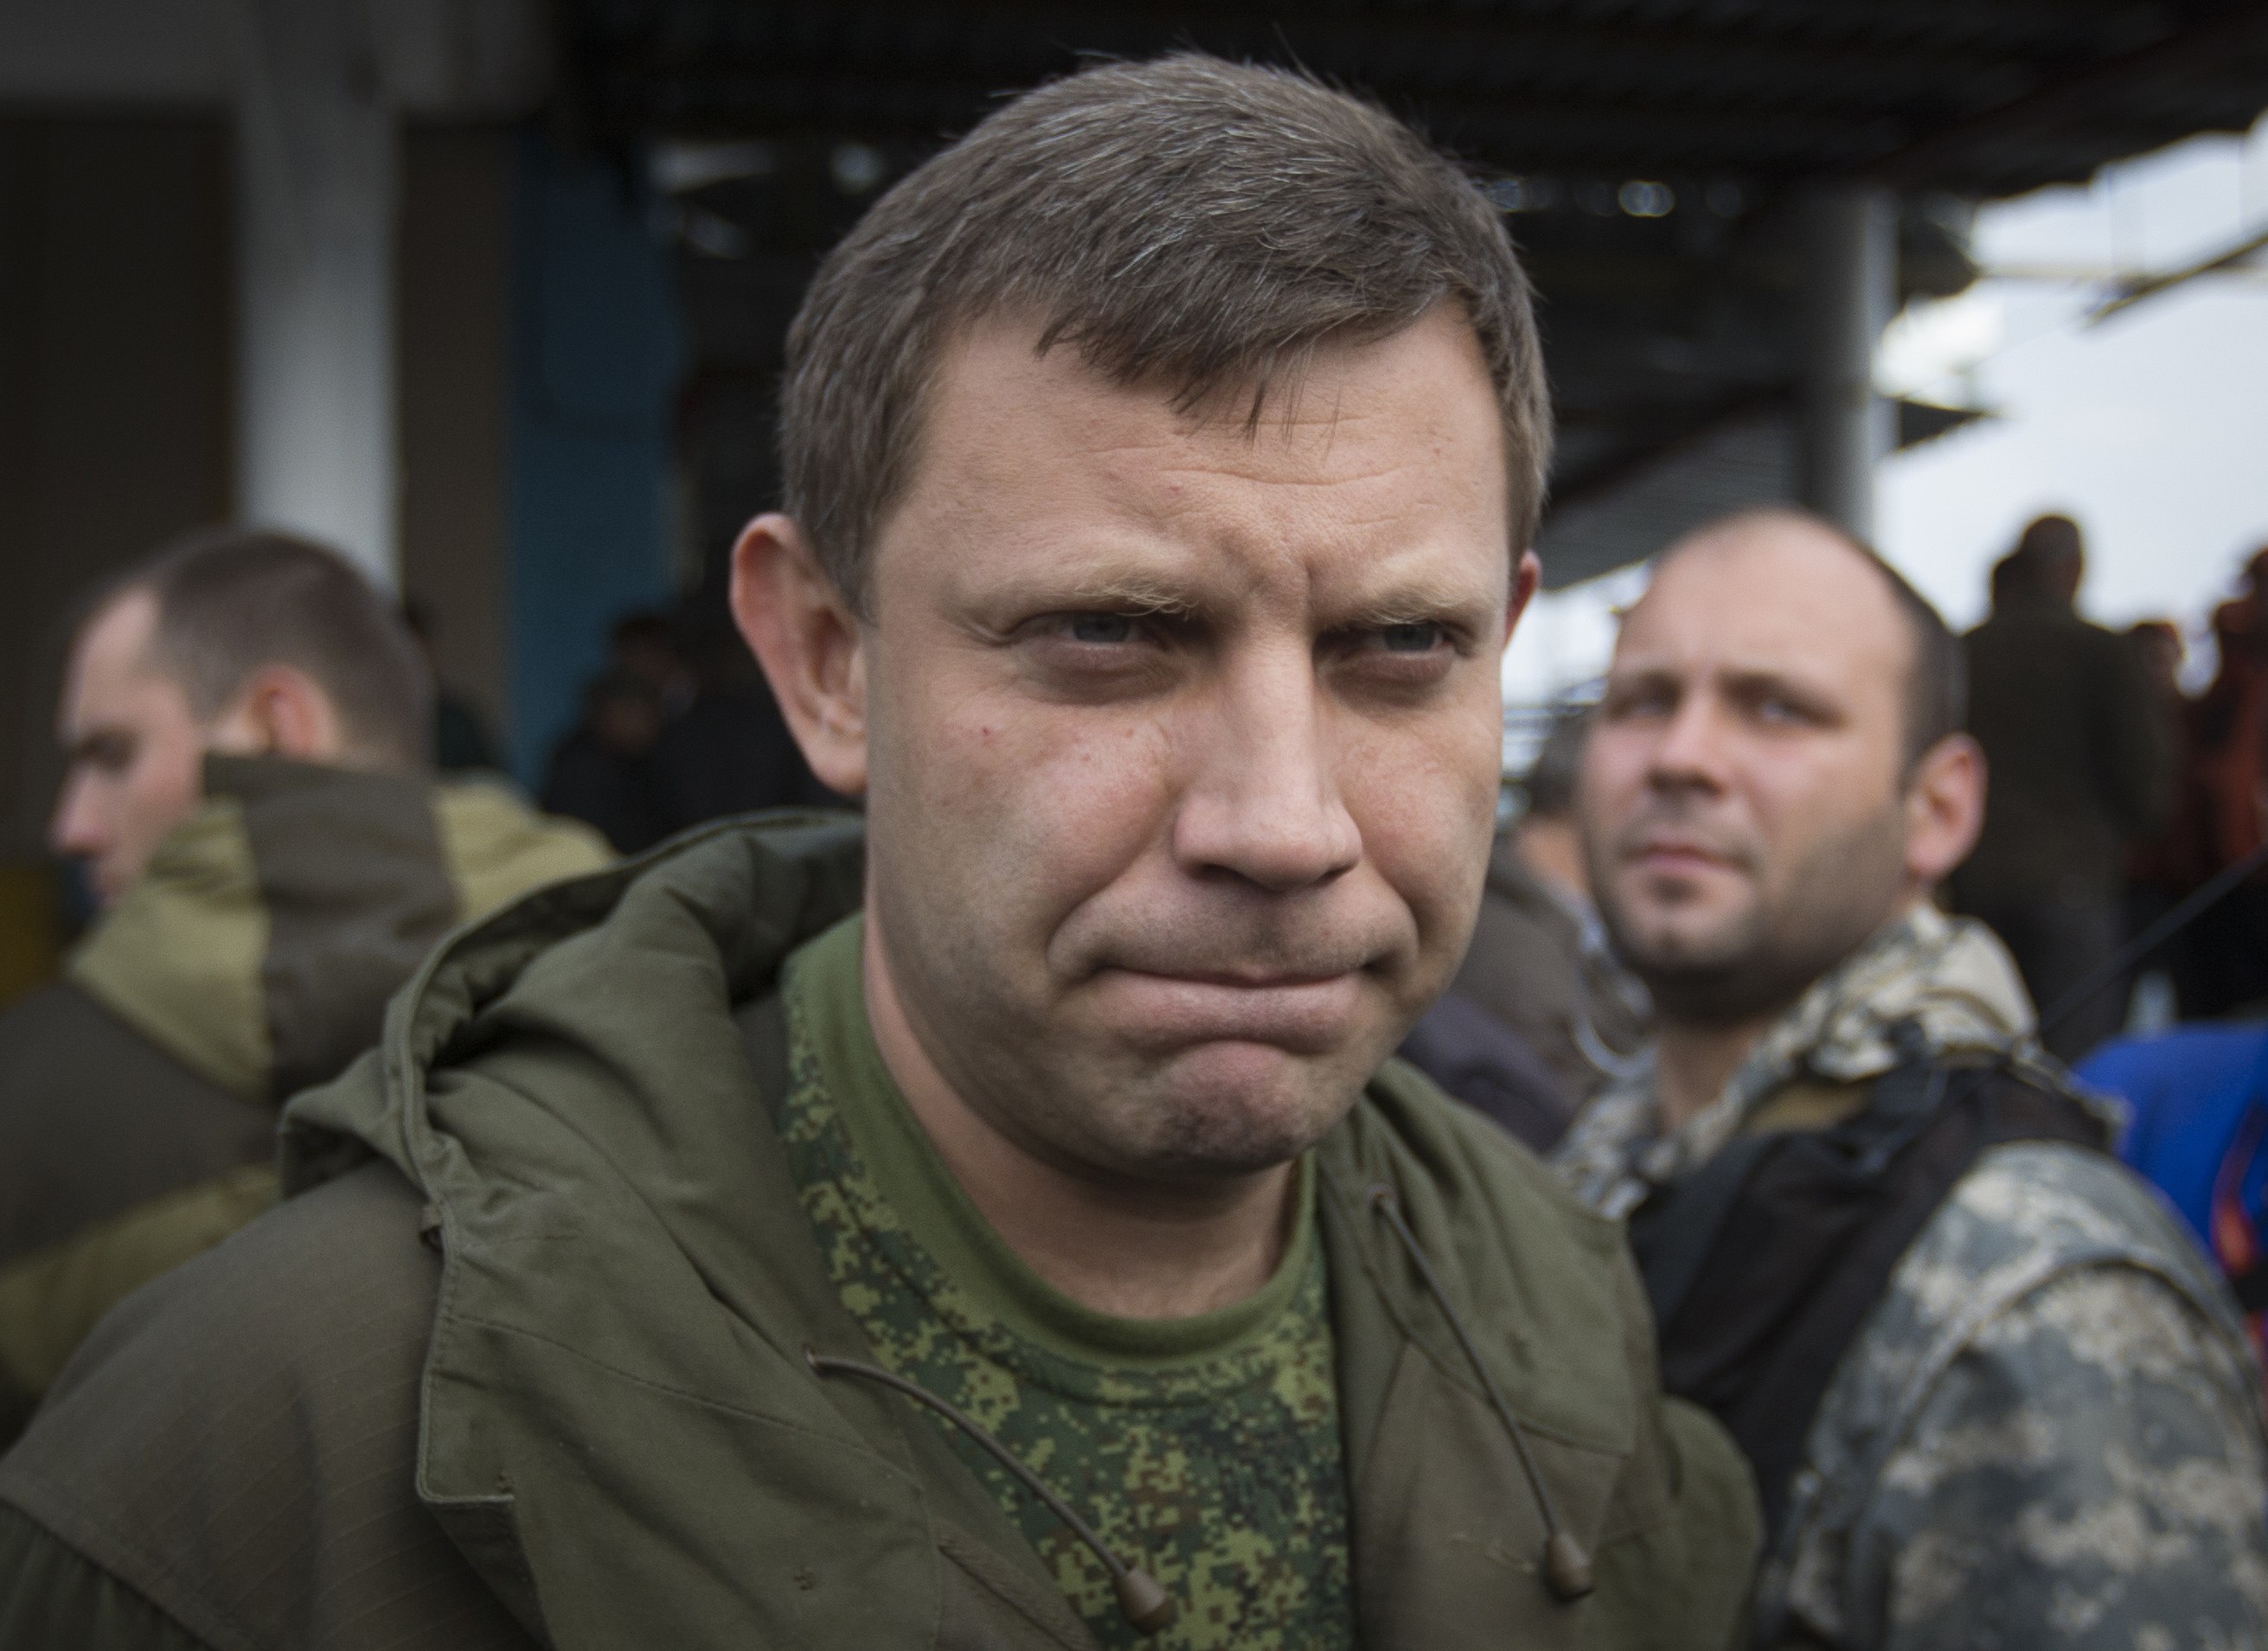 Жители оккупированного Донецка молят, чтобы это оказалось правдой: у дома главаря "ДНР" замечено много охраны и грузовых машин - названа вероятная причина побега Захарченко